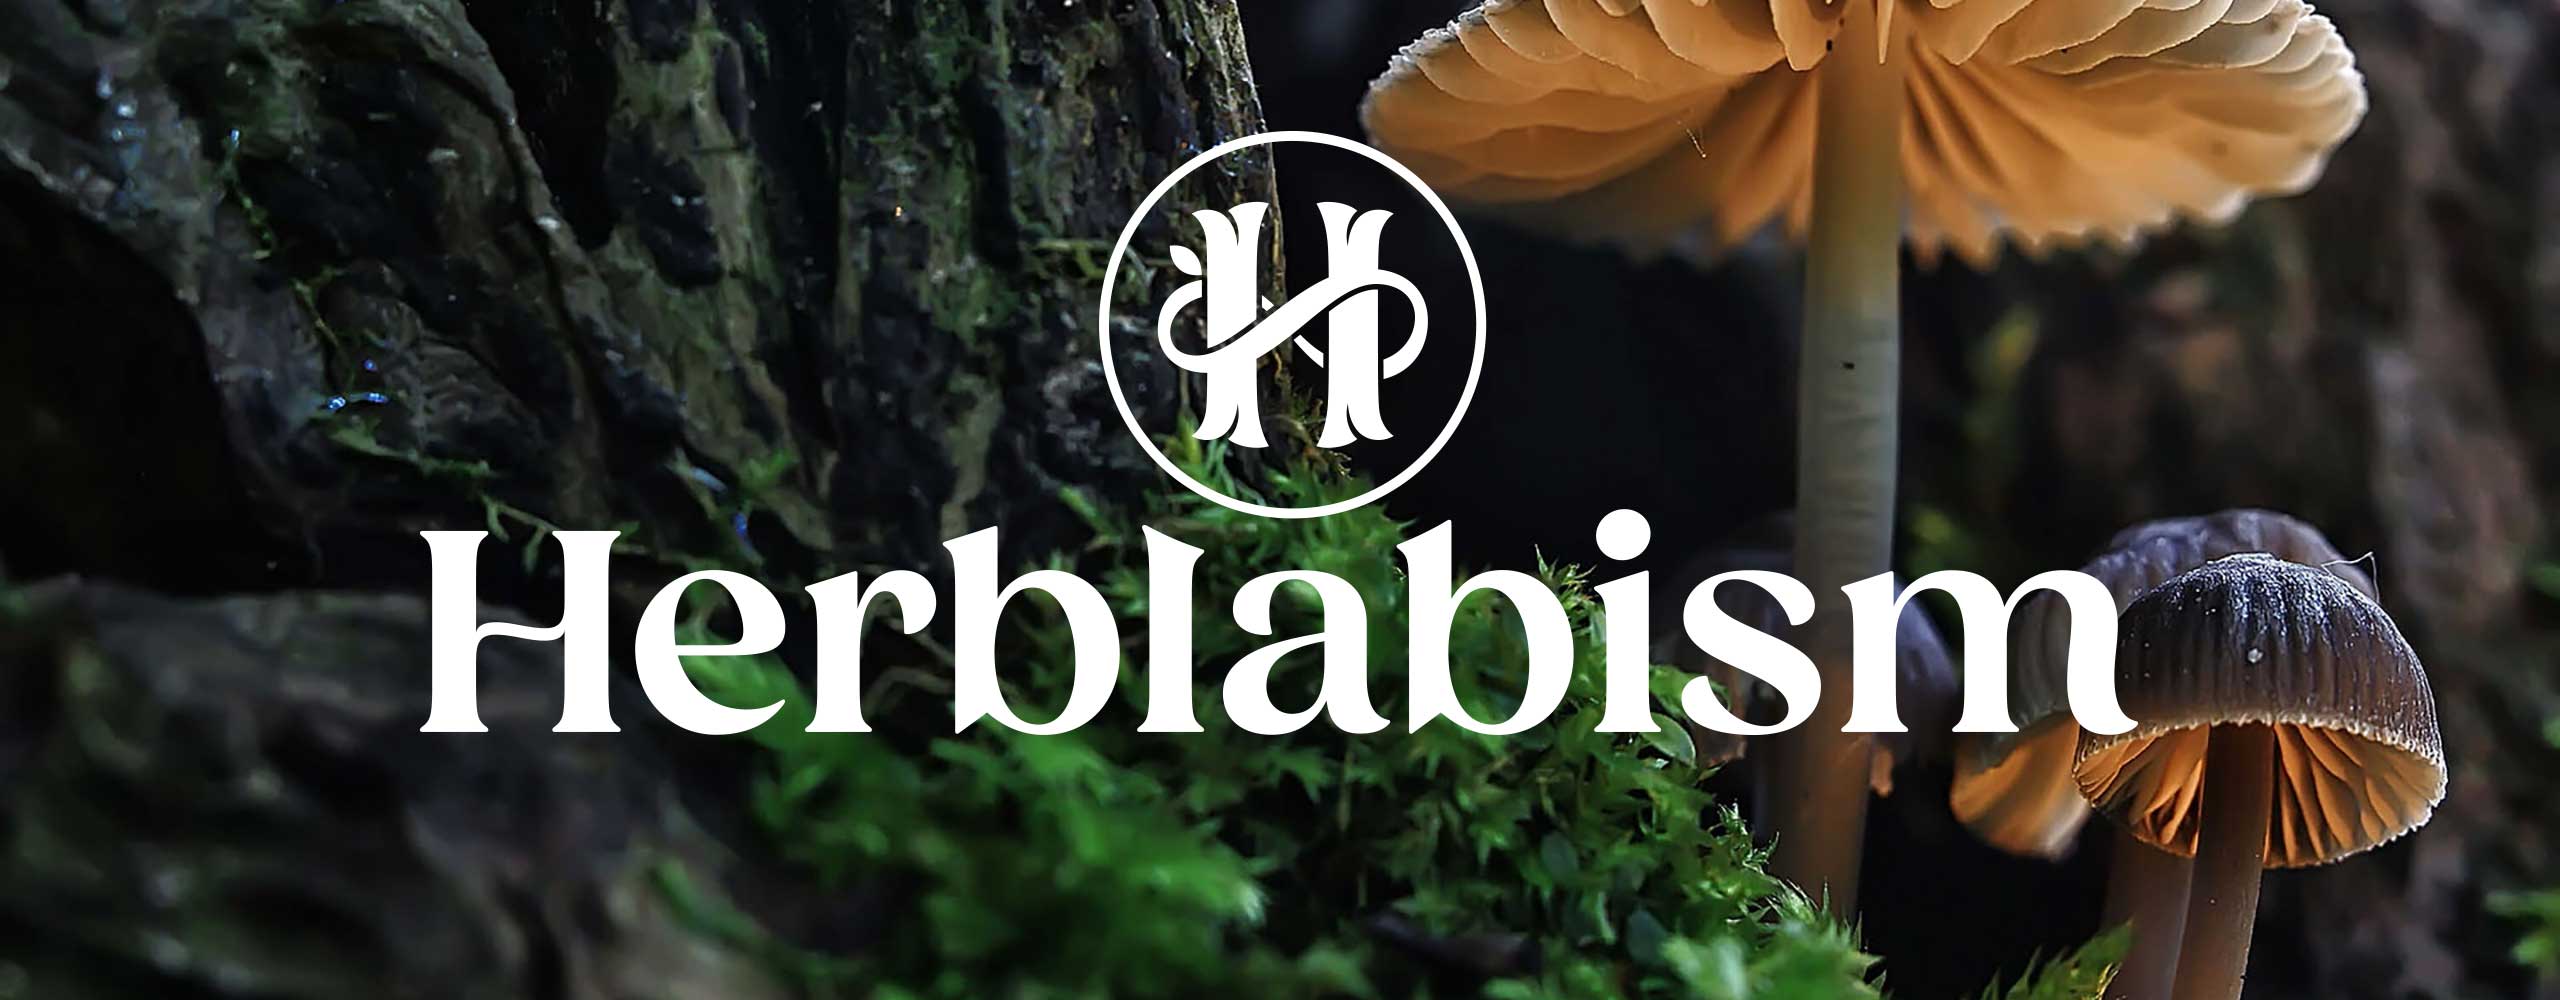 Herblabism Wordmark and Monogram by Dan Forster - hero image